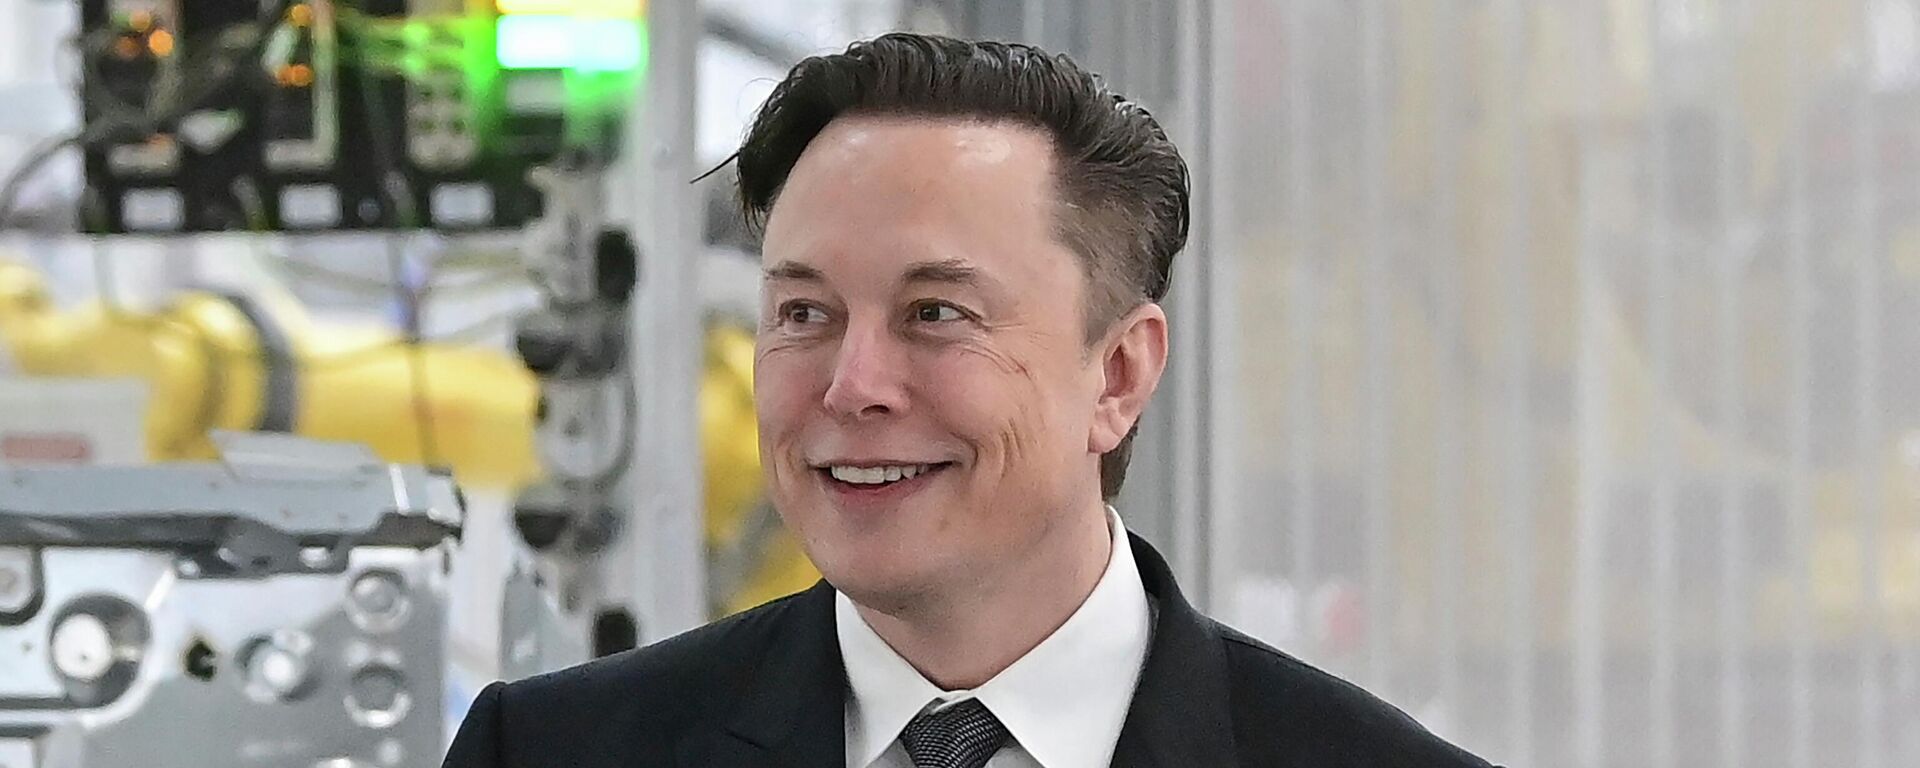  Tesla CEO Elon Musk attends the opening of the Tesla factory Berlin Brandenburg in Gruenheide, Germany on March 22, 2022. - Sputnik International, 1920, 13.07.2022